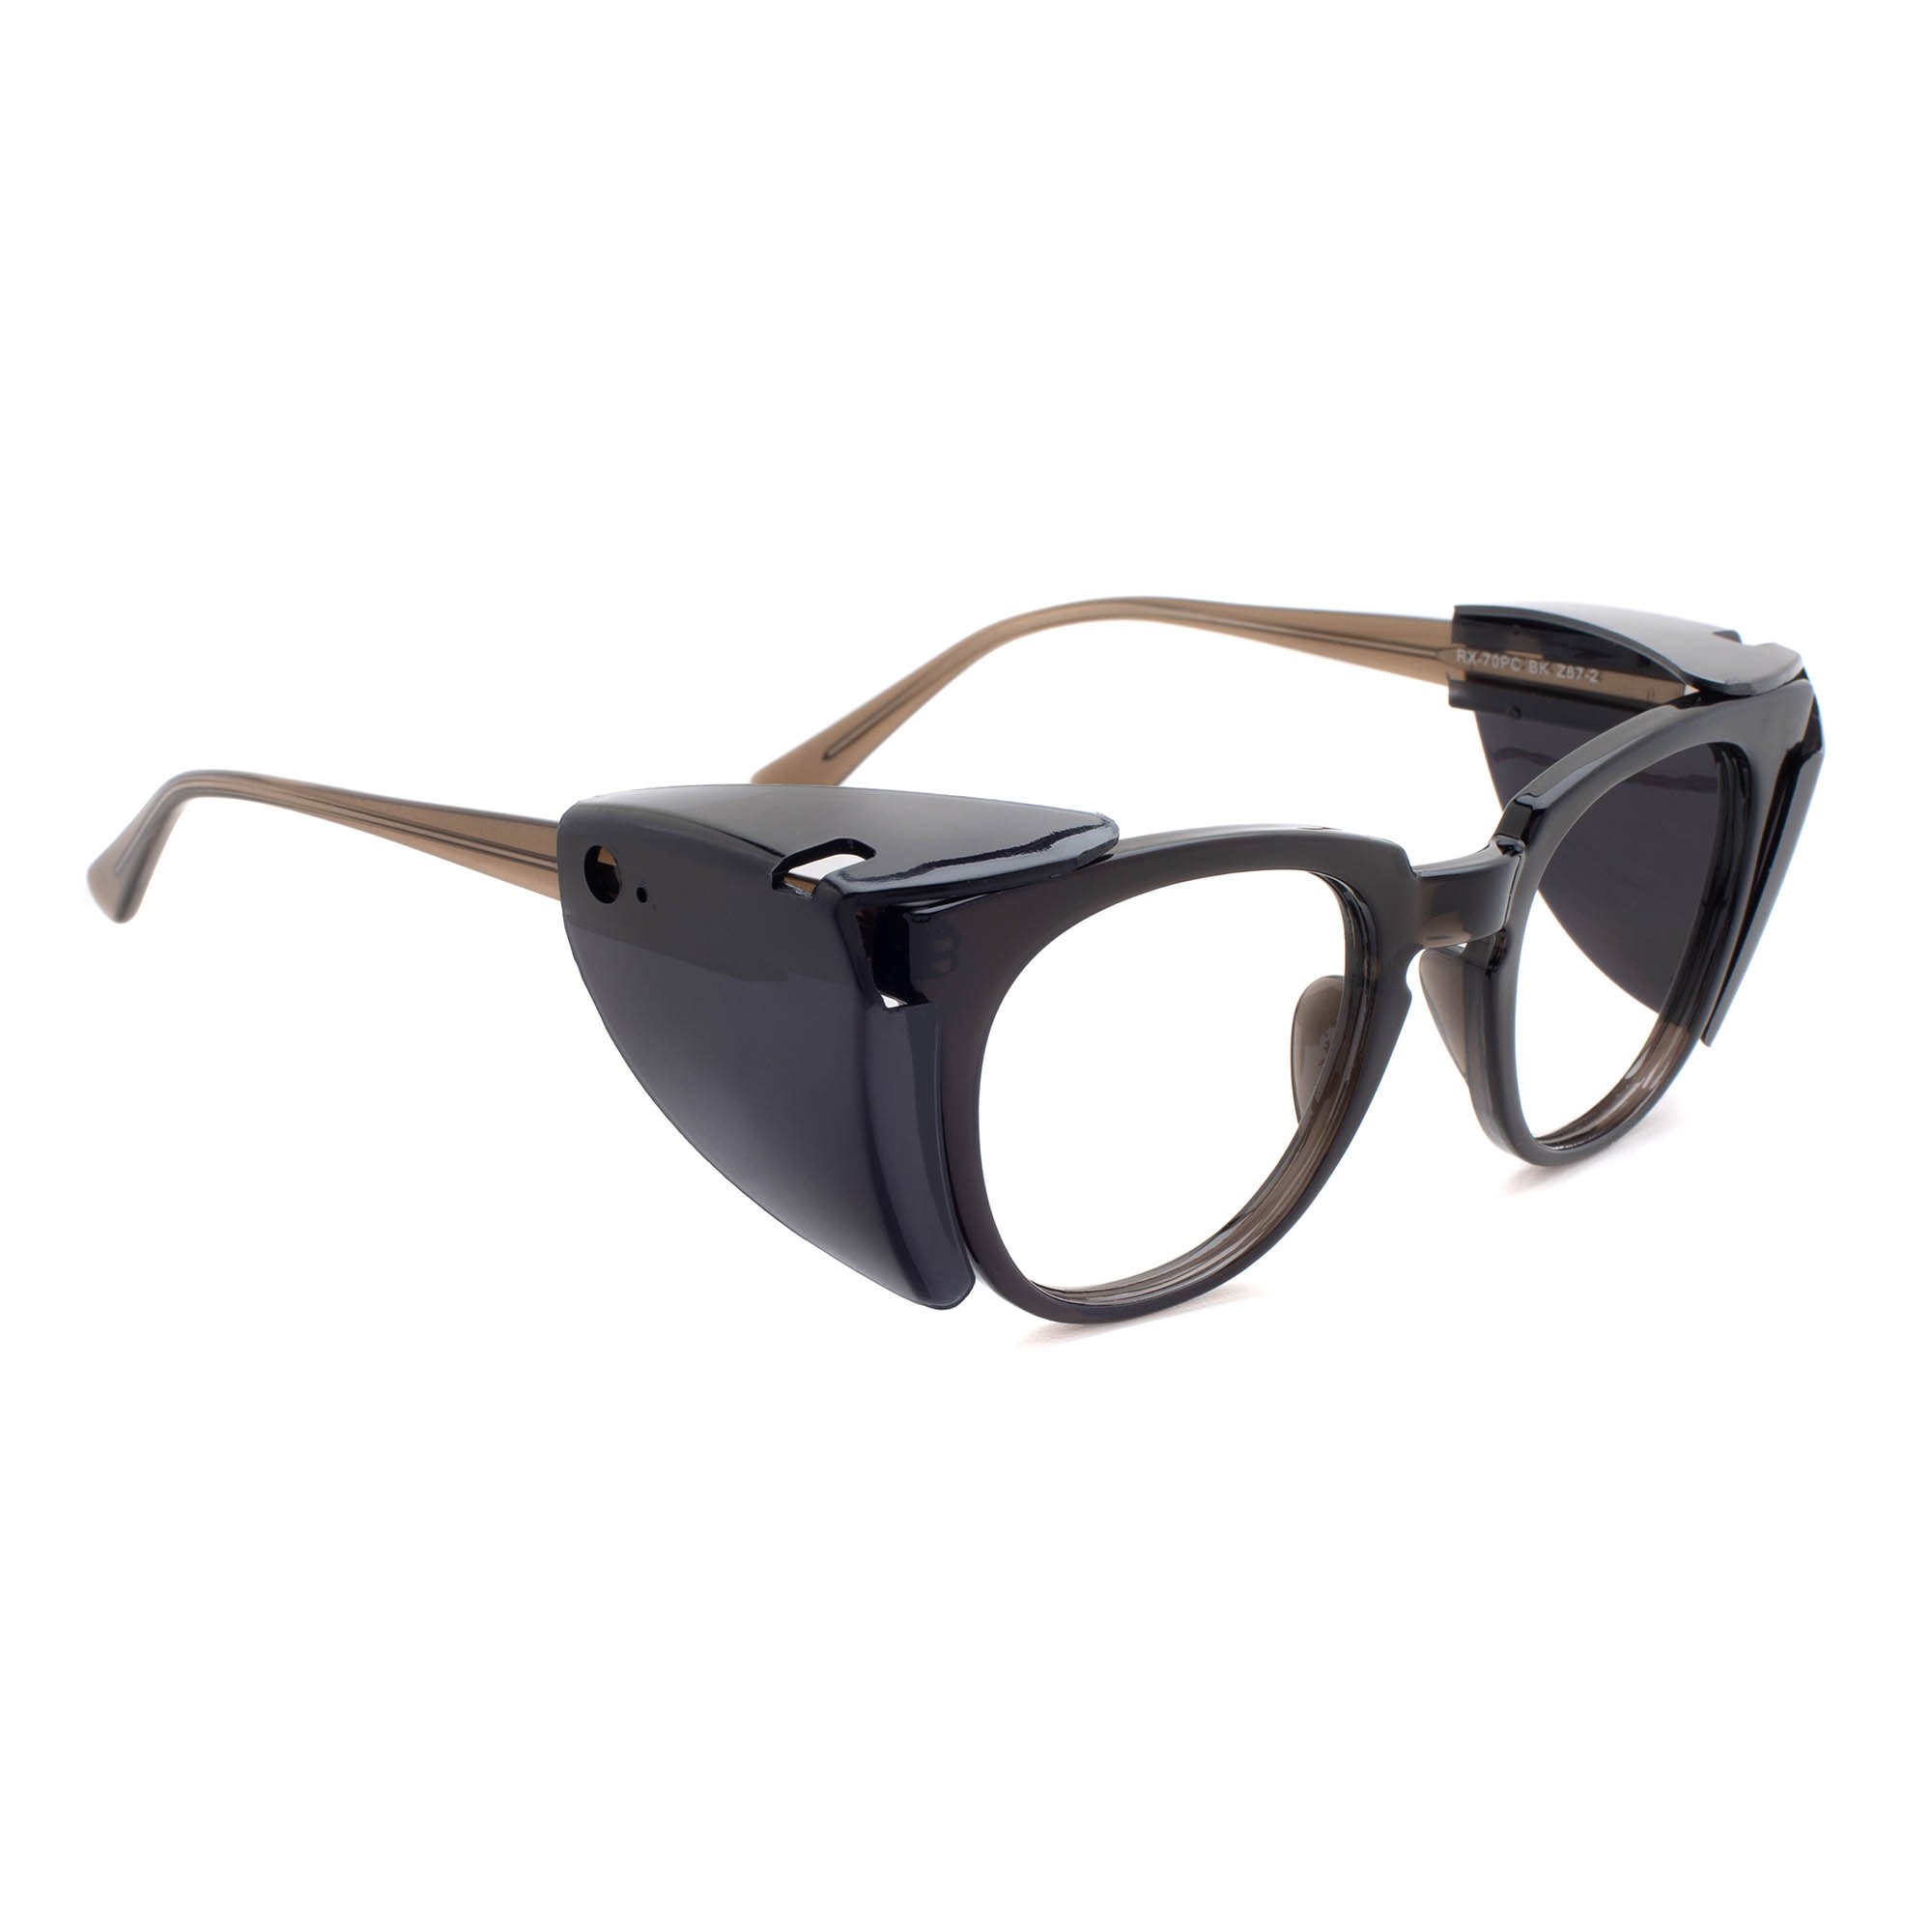 wayfarer style safety glasses